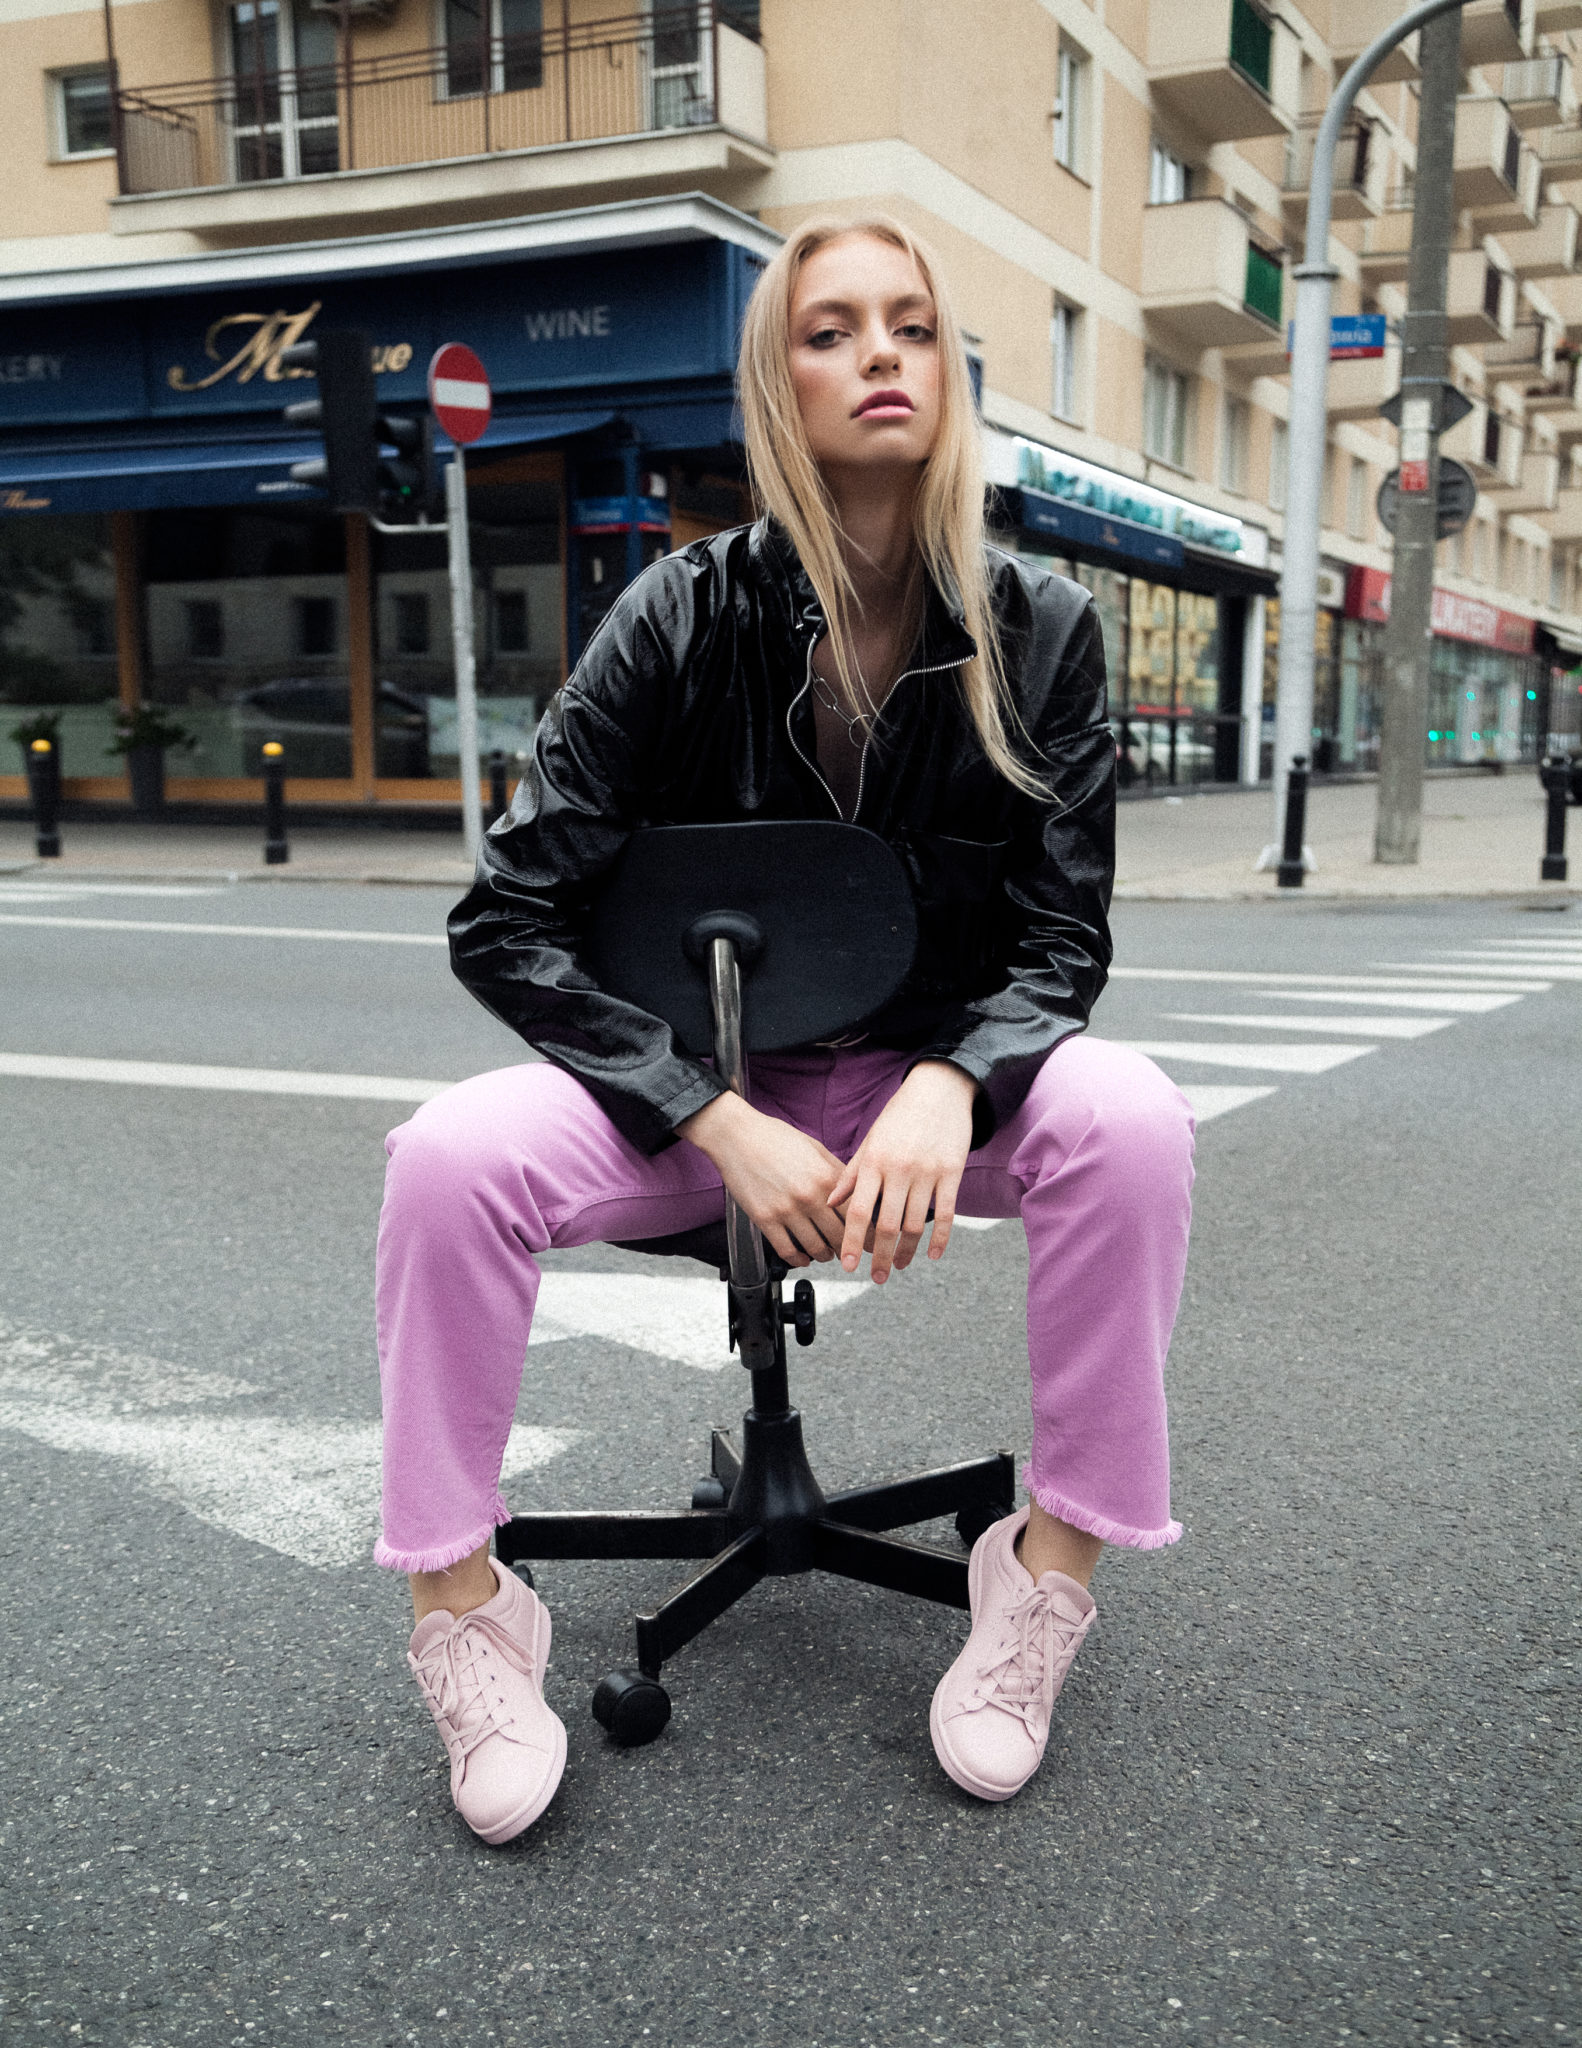 Dziewczyna w różowych spodniach i czarnej kurtce siedzi na środku ulicy na krześle z kółkami